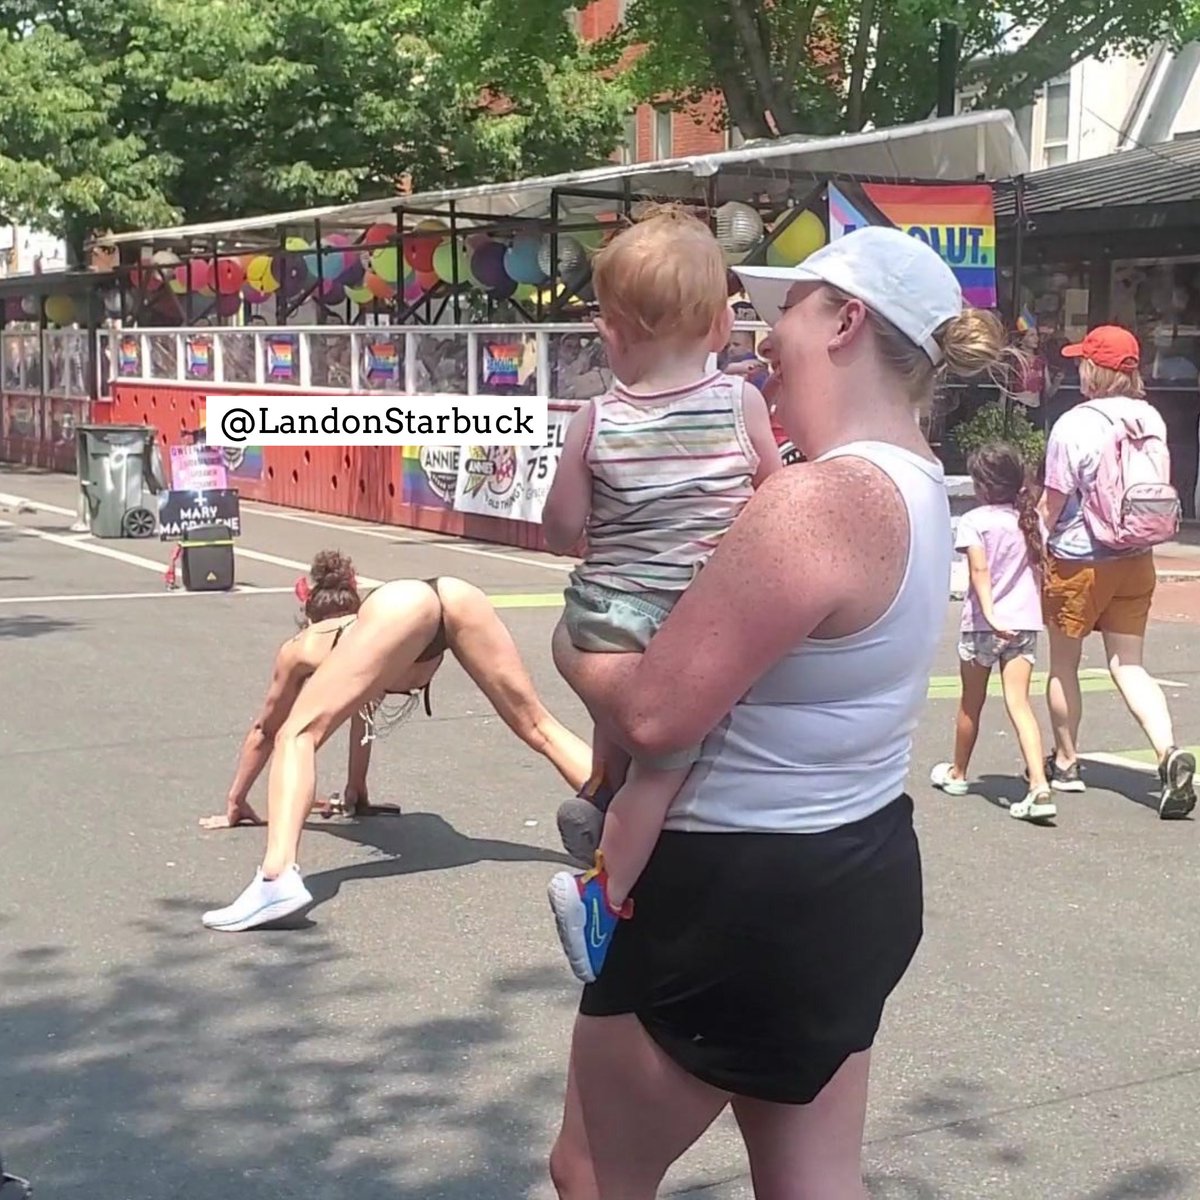 Sondeo Tuitero 

Llevaría a su hijo a una marcha del orgullo LGBT1?

NO: 🔄
SÍ: ❤️